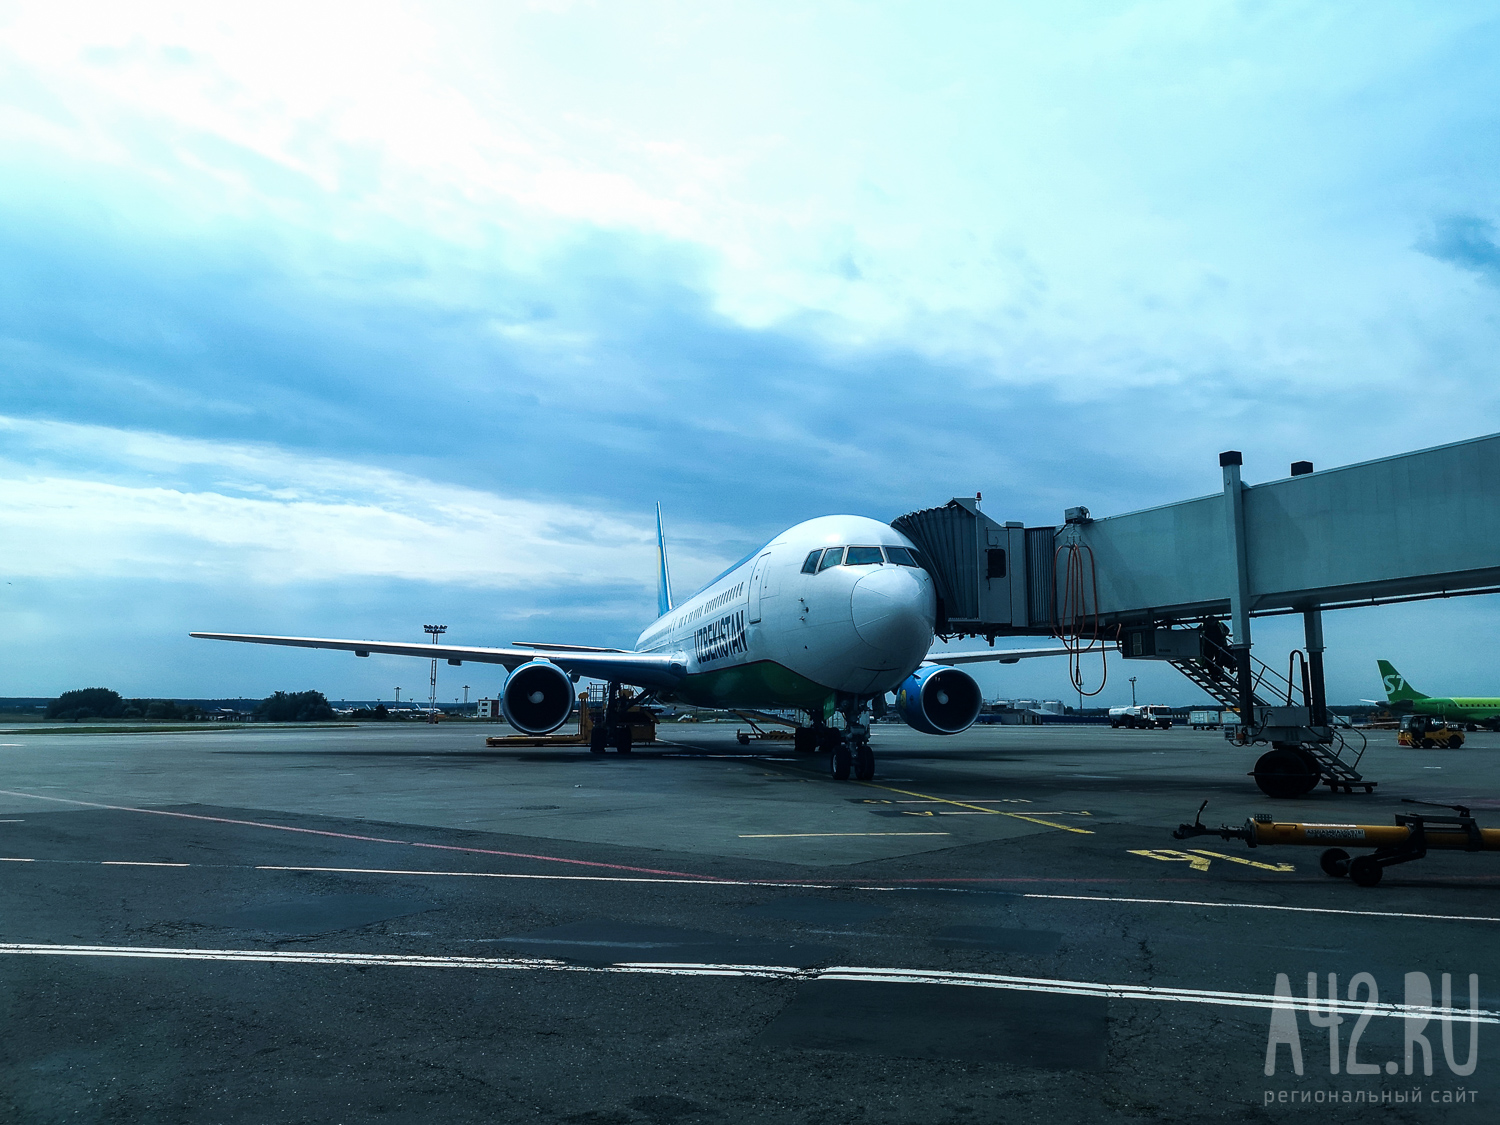 Авиакомпании на несколько часов задержали рейсы из Москвы и Санкт-Петербурга в кузбасский аэропорт и обратно